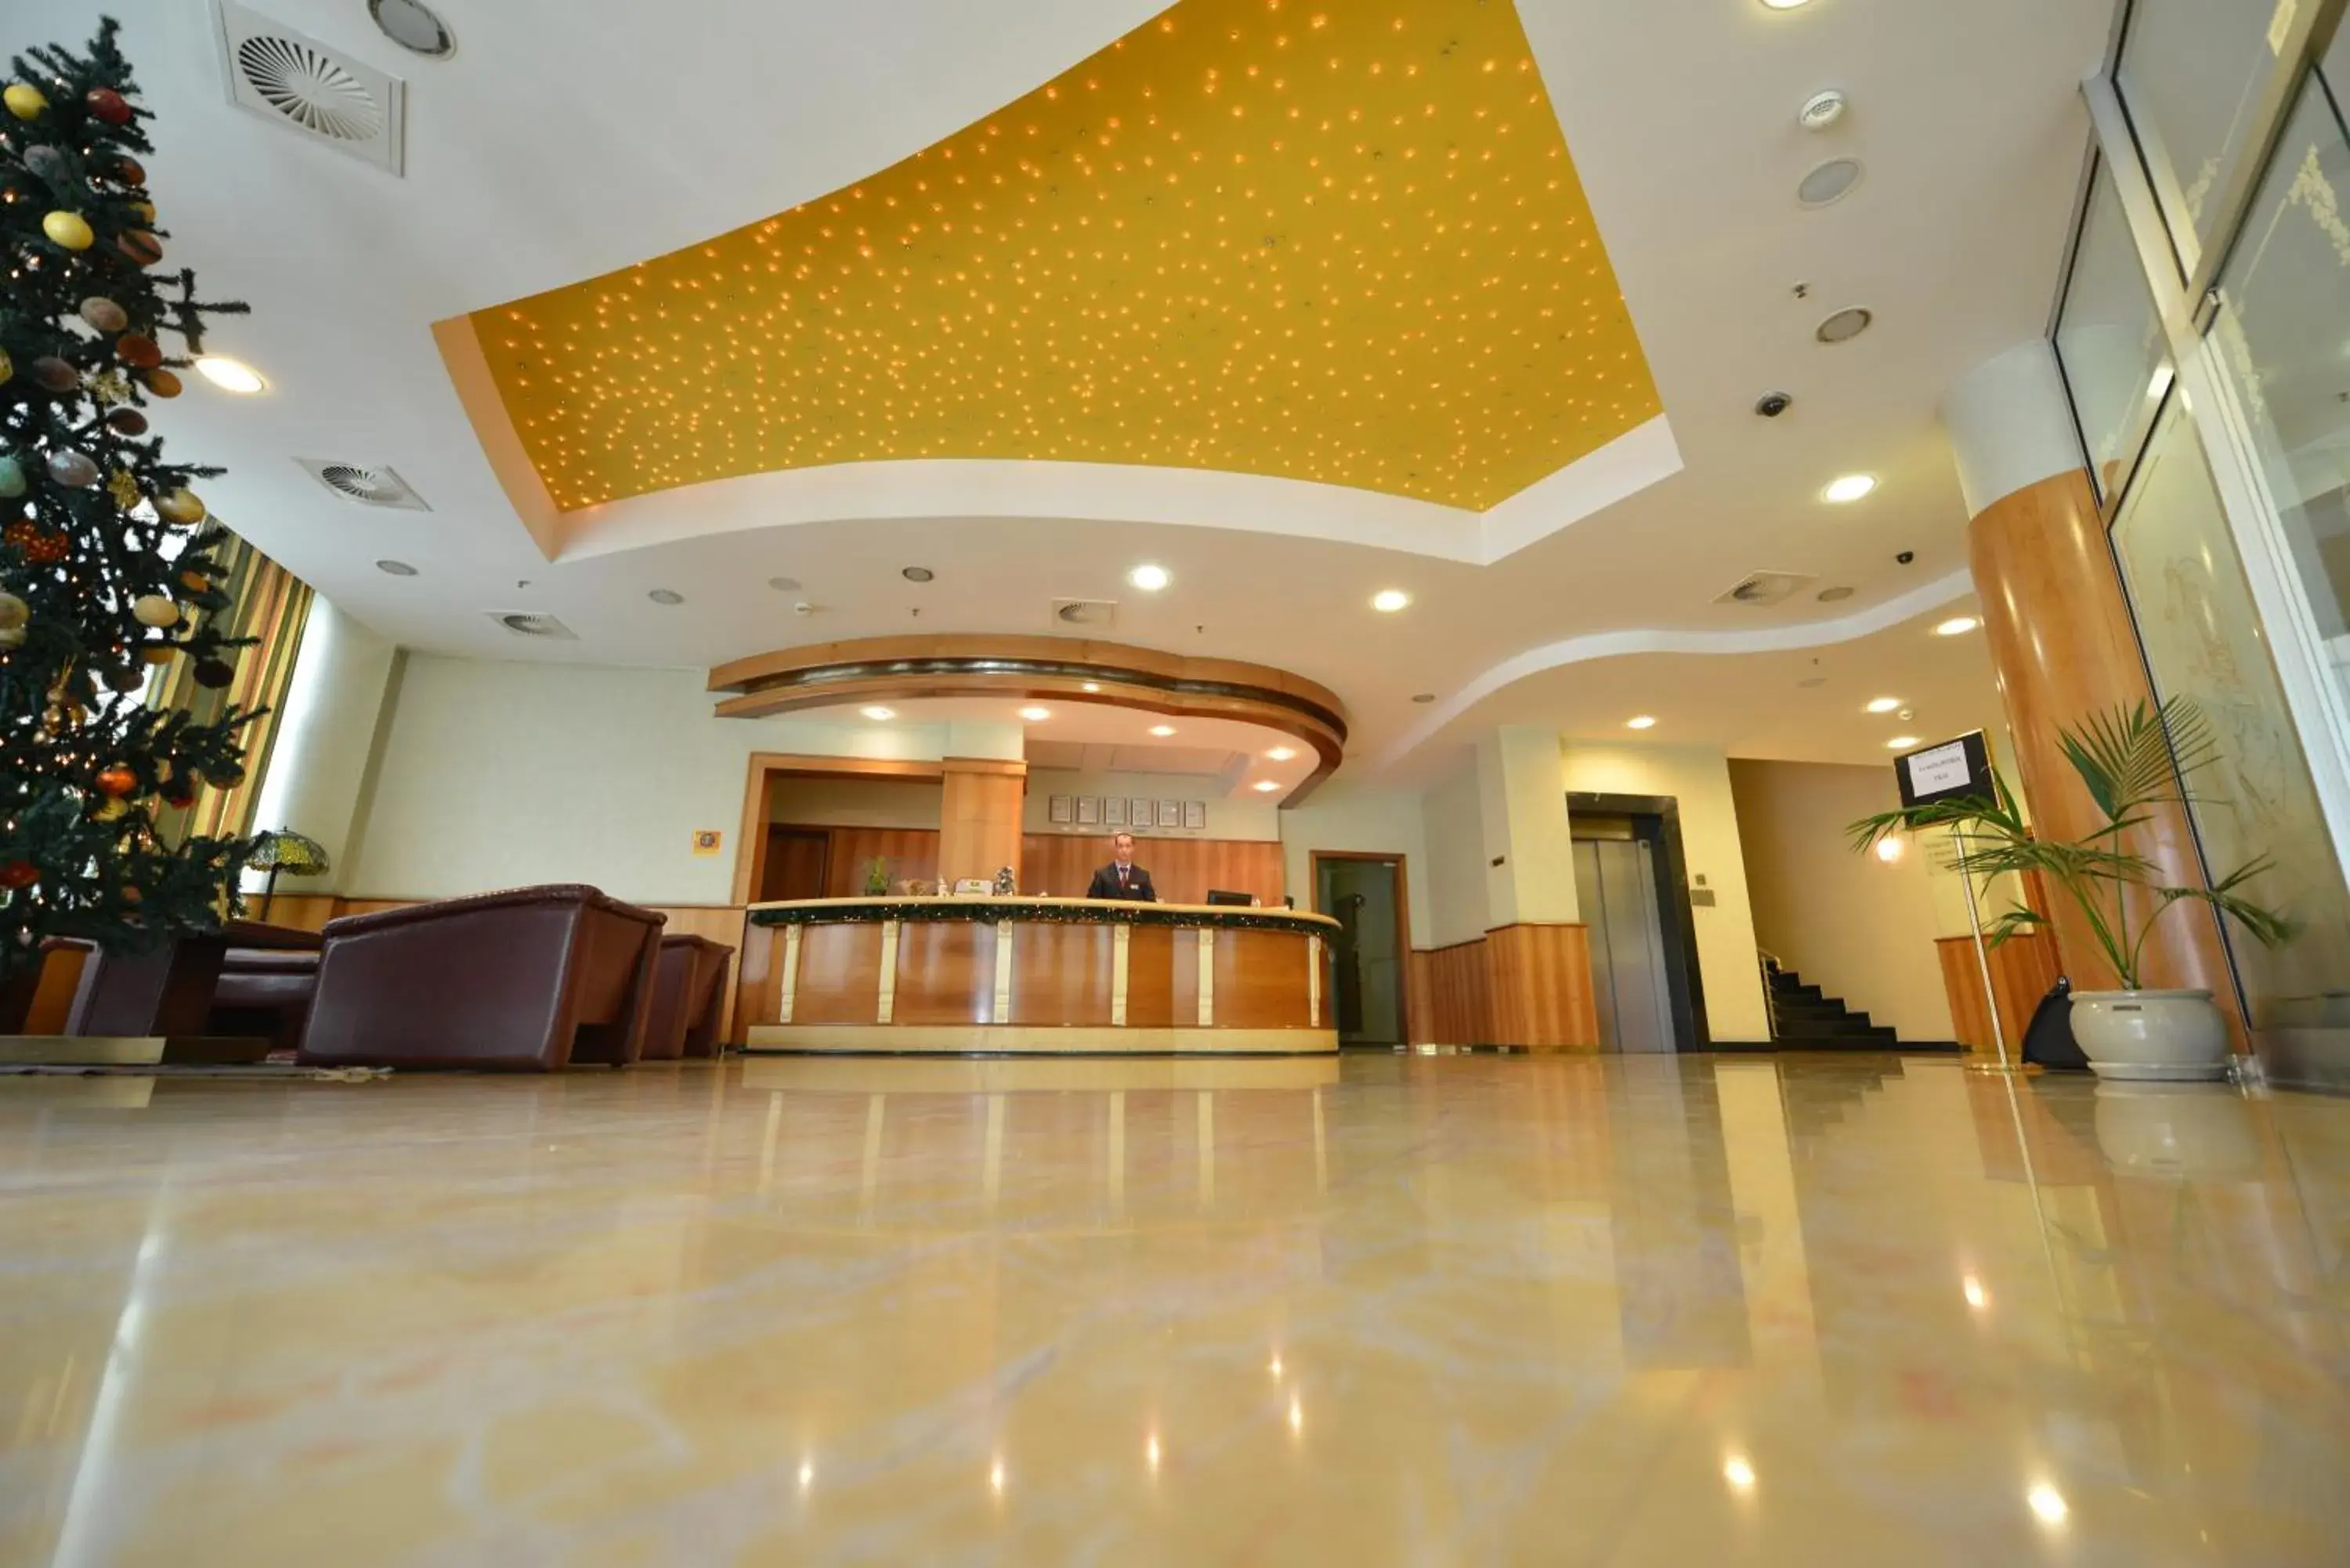 Lobby or reception, Lobby/Reception in Hotel Karpos